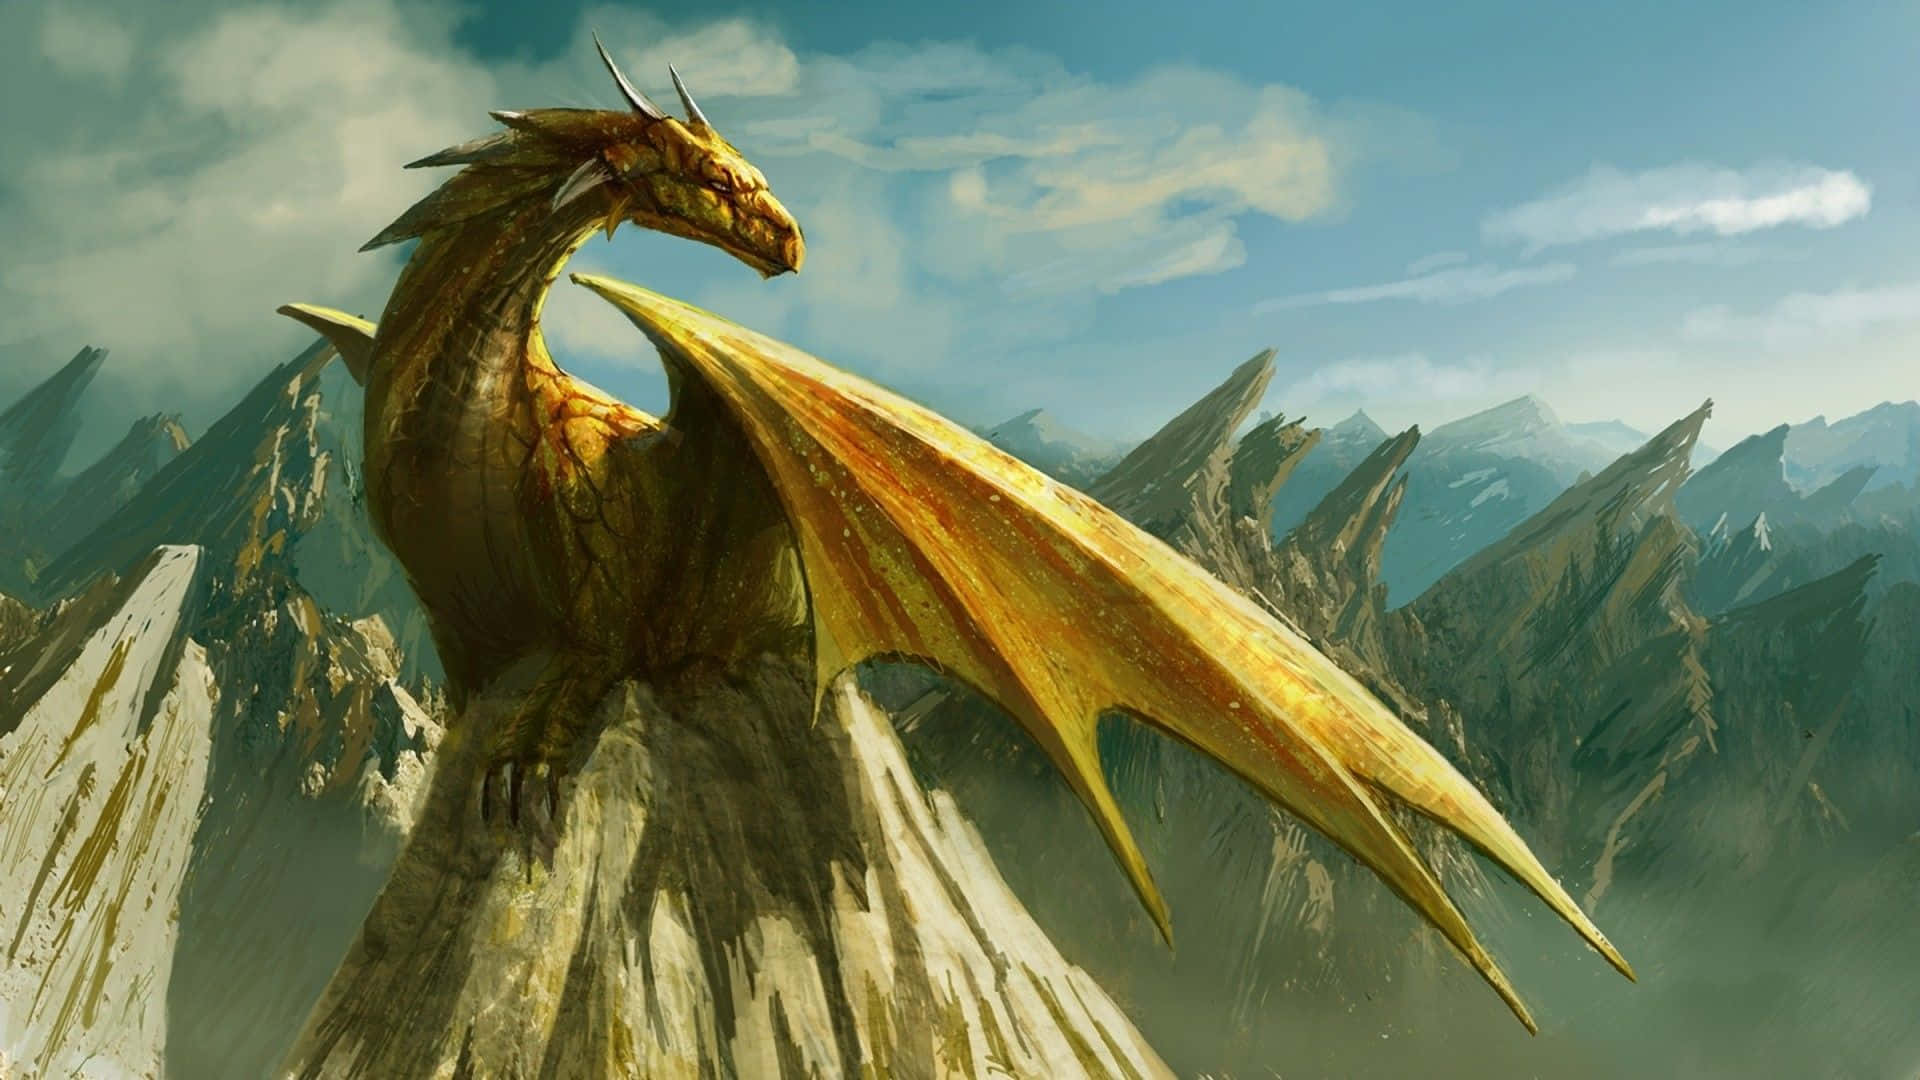 Hintergrundmit Goldenem Drachen